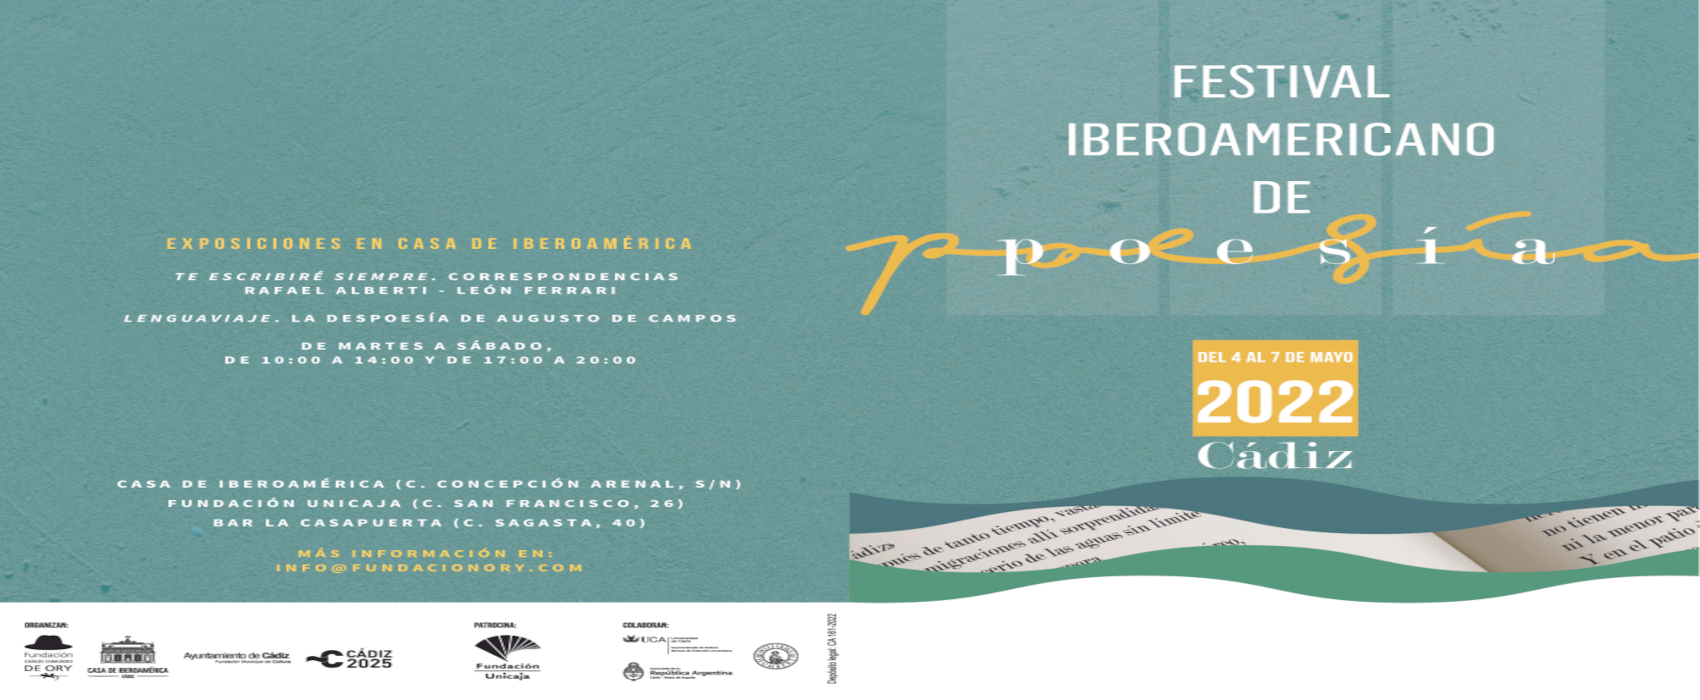 El Servicio de Extensión Universitaria del Vicerrectorado de Cultura de la UCA colabora con el Festival Iberoamericano de Poesía, organizado por la Fundación Carlos Edmundo de Ory y el Ayuntamiento de Cádiz